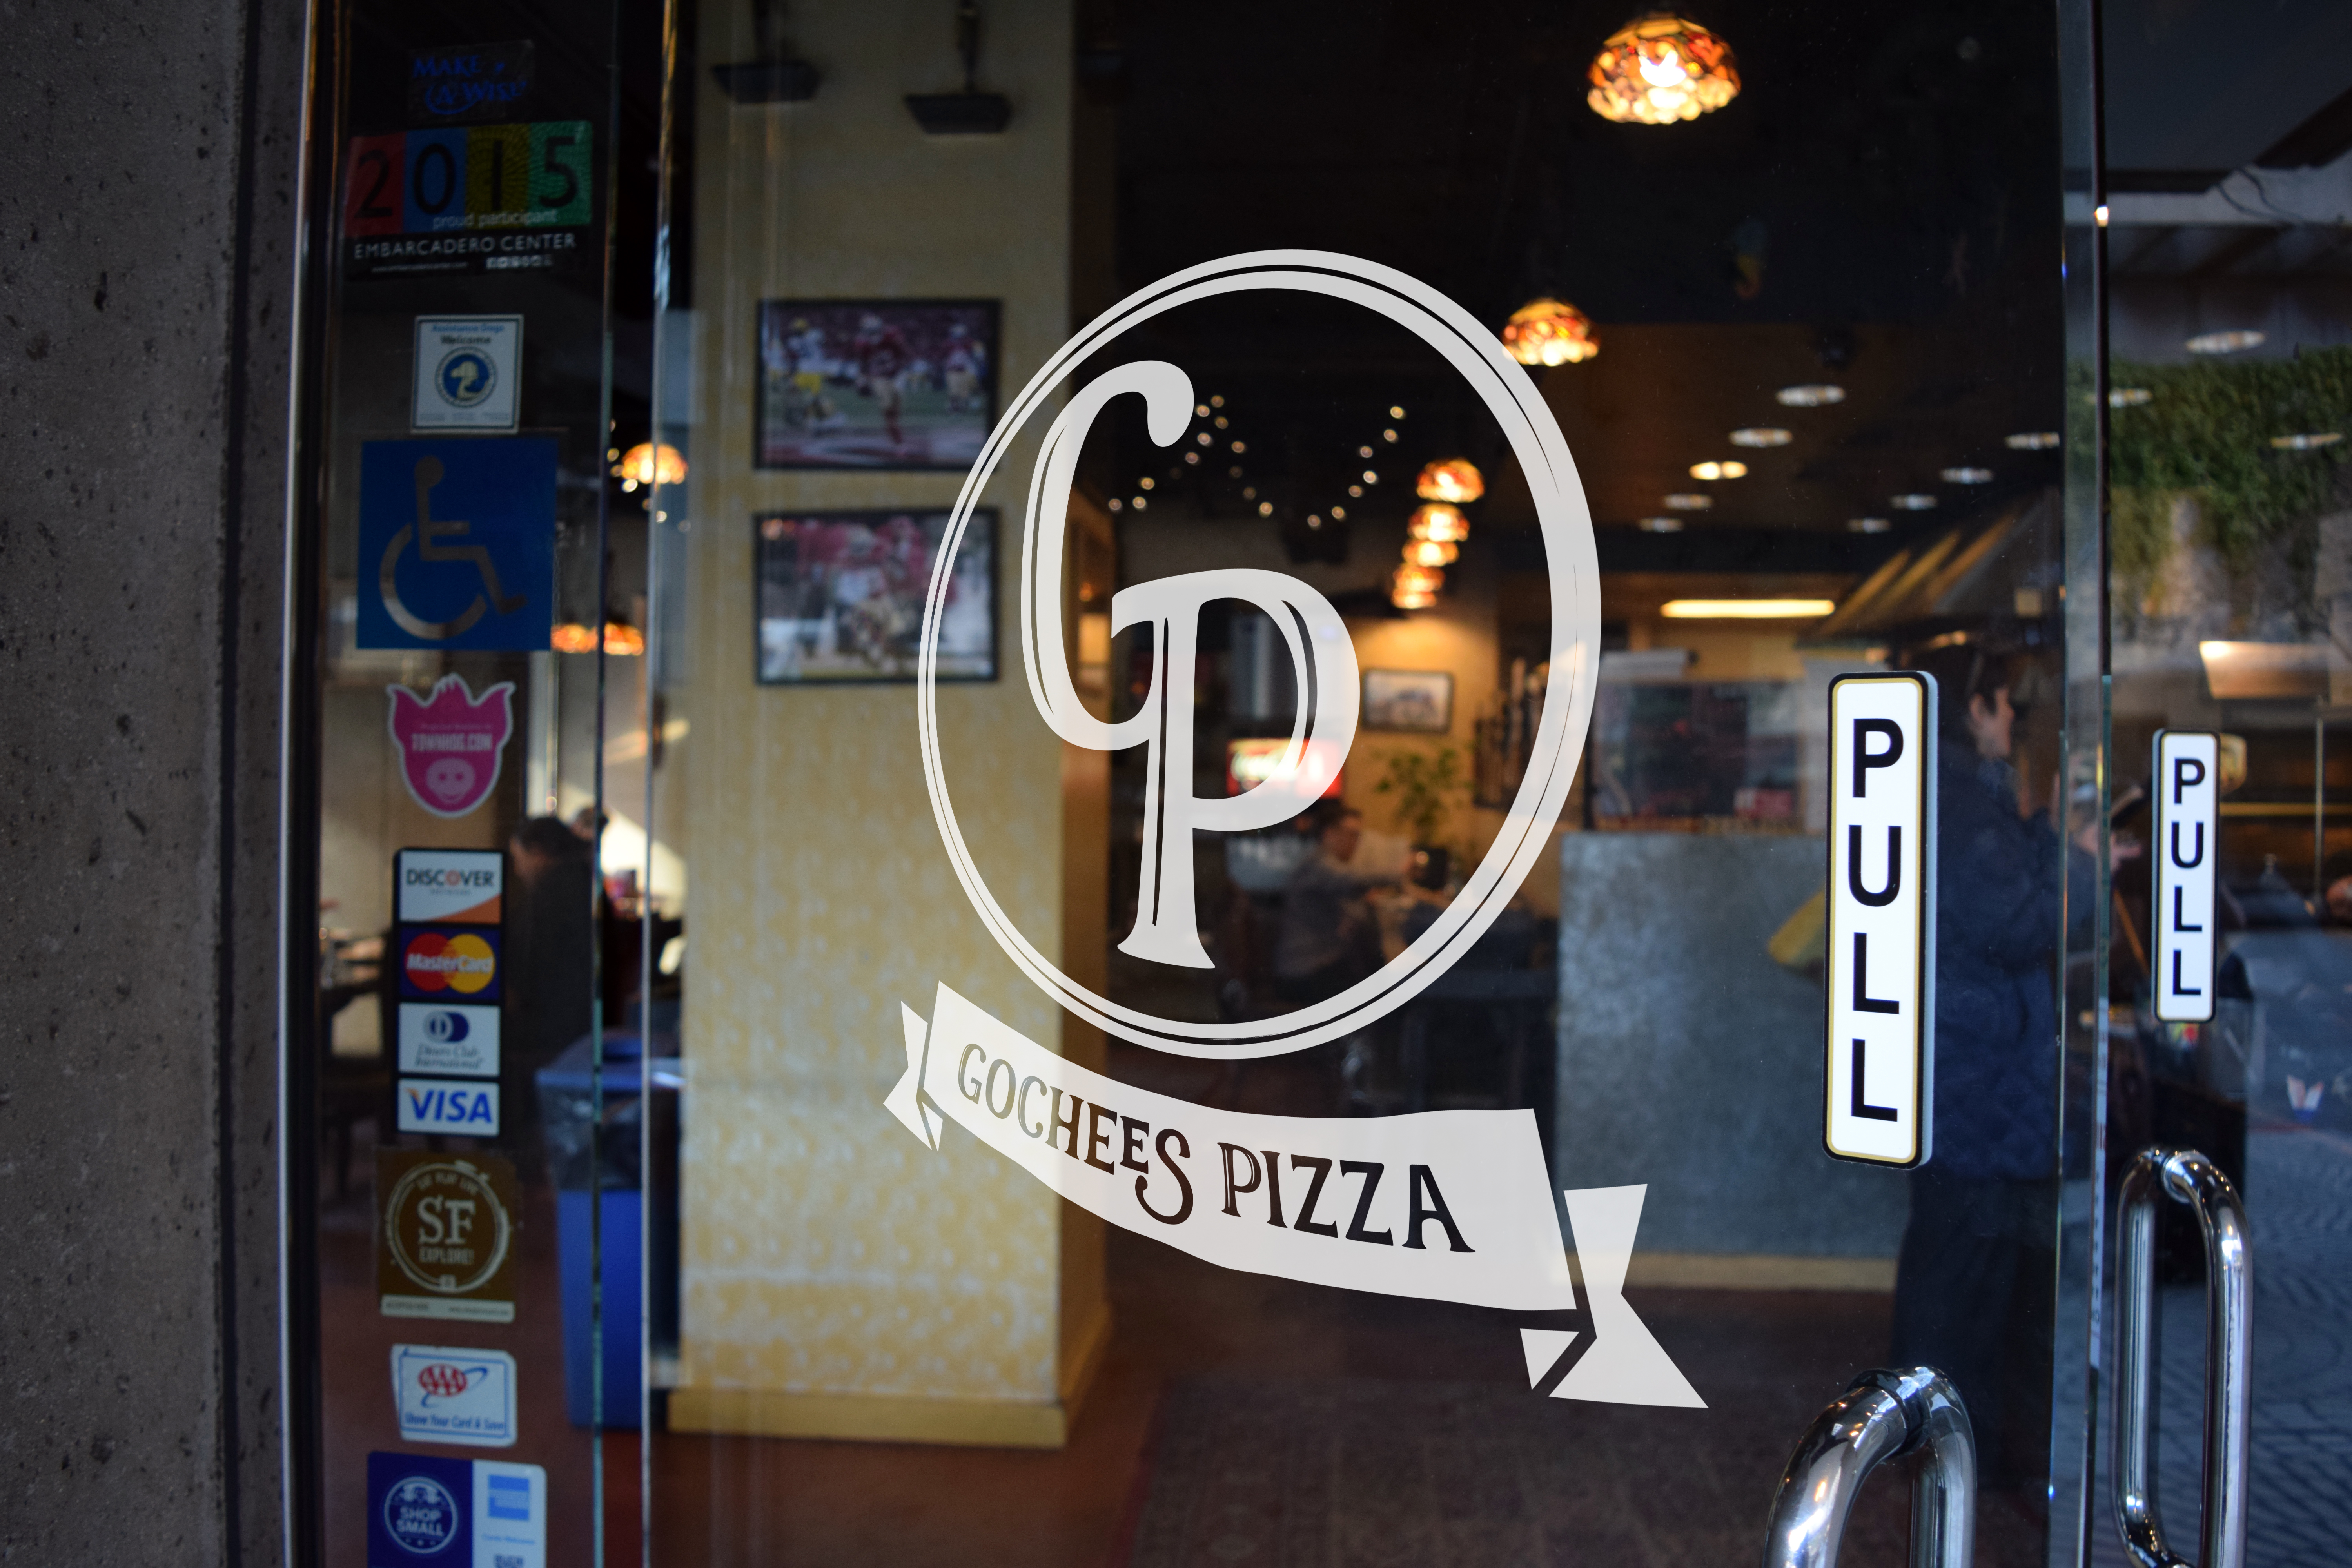 Download Gochees Pizza, Branding & Menu - Hourglass Studios